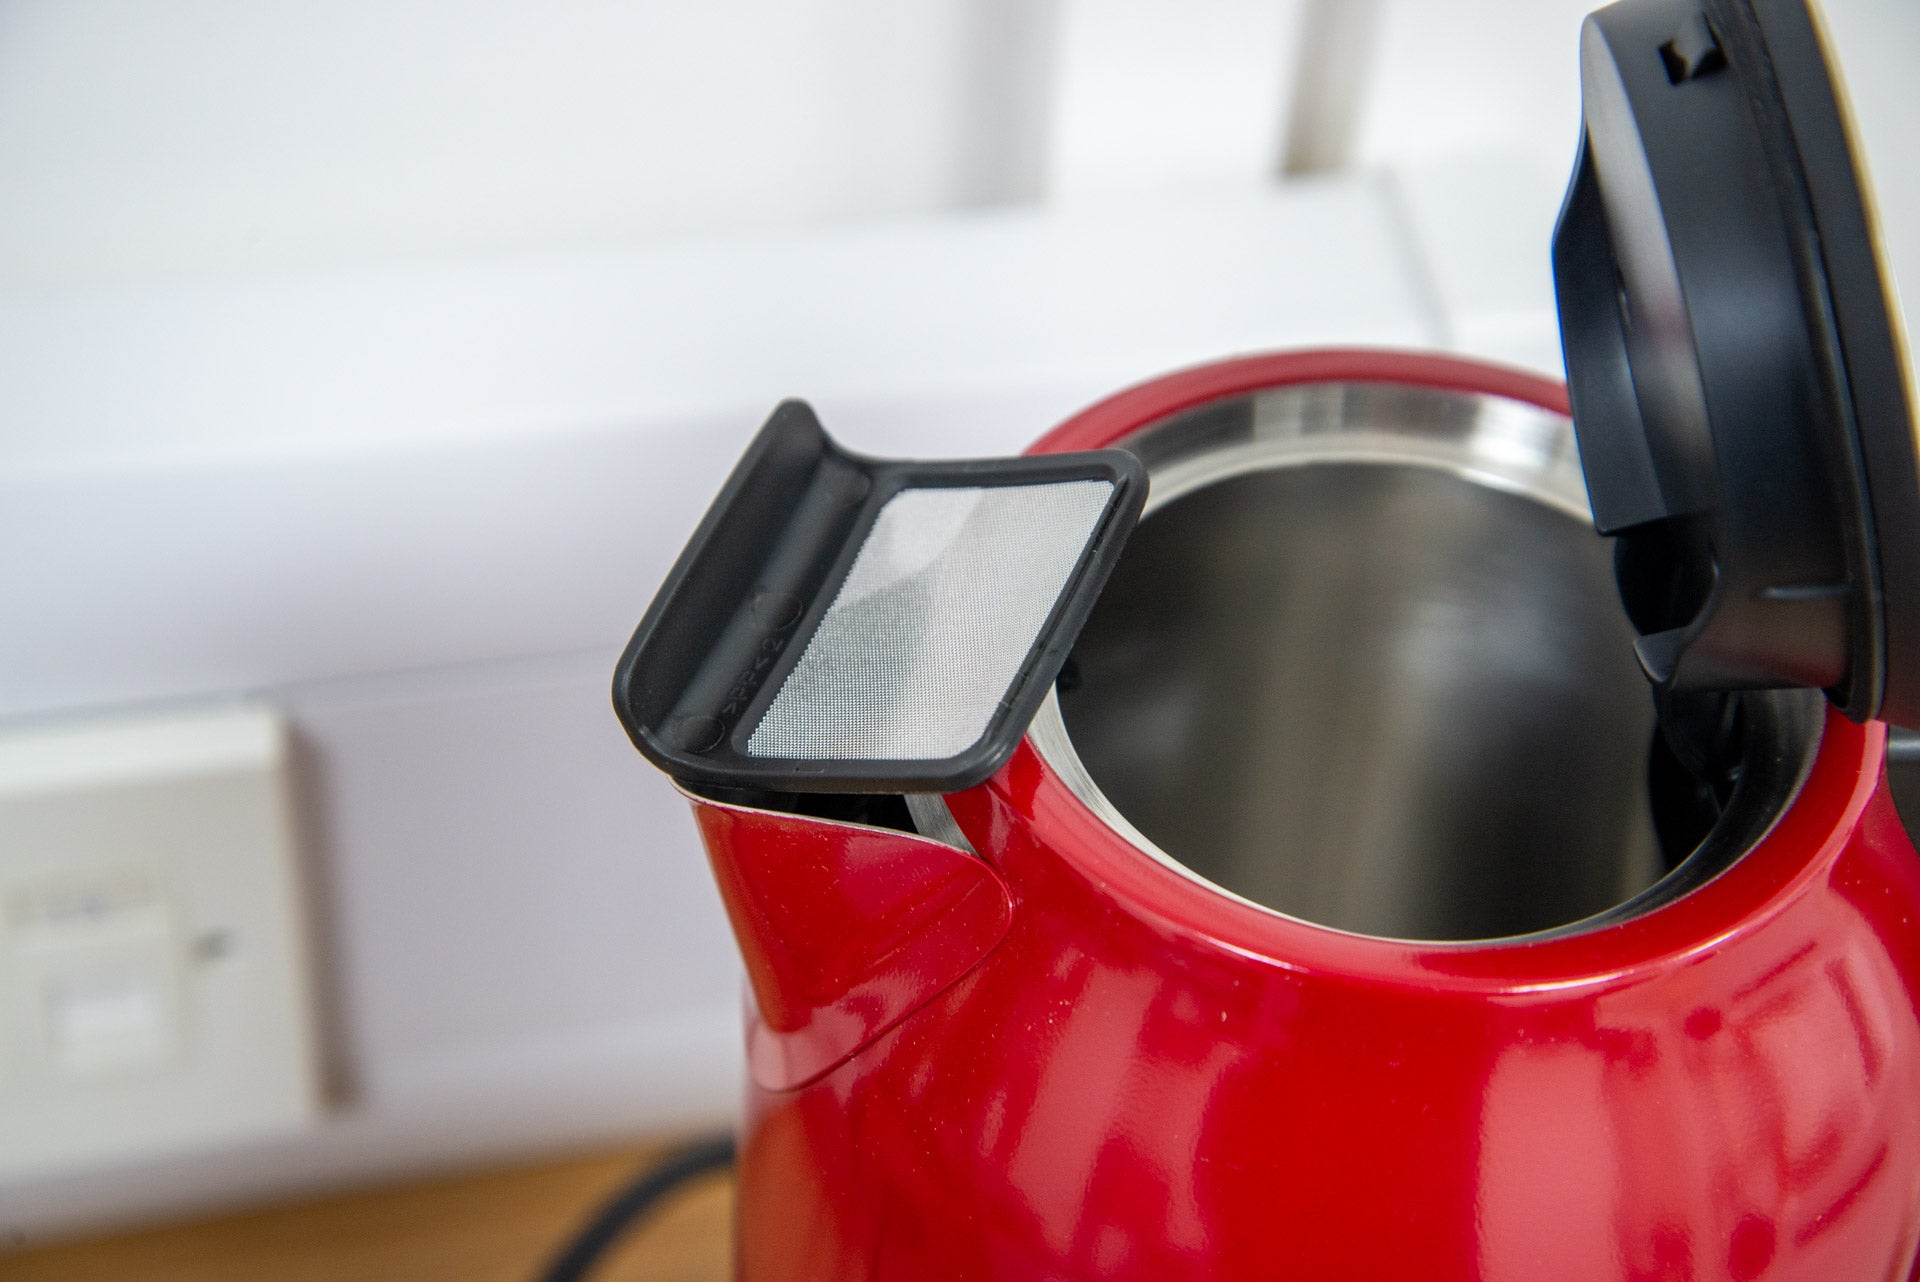 KitchenAid-Wasserkocher mit variabler Temperatur und Kalkfilter